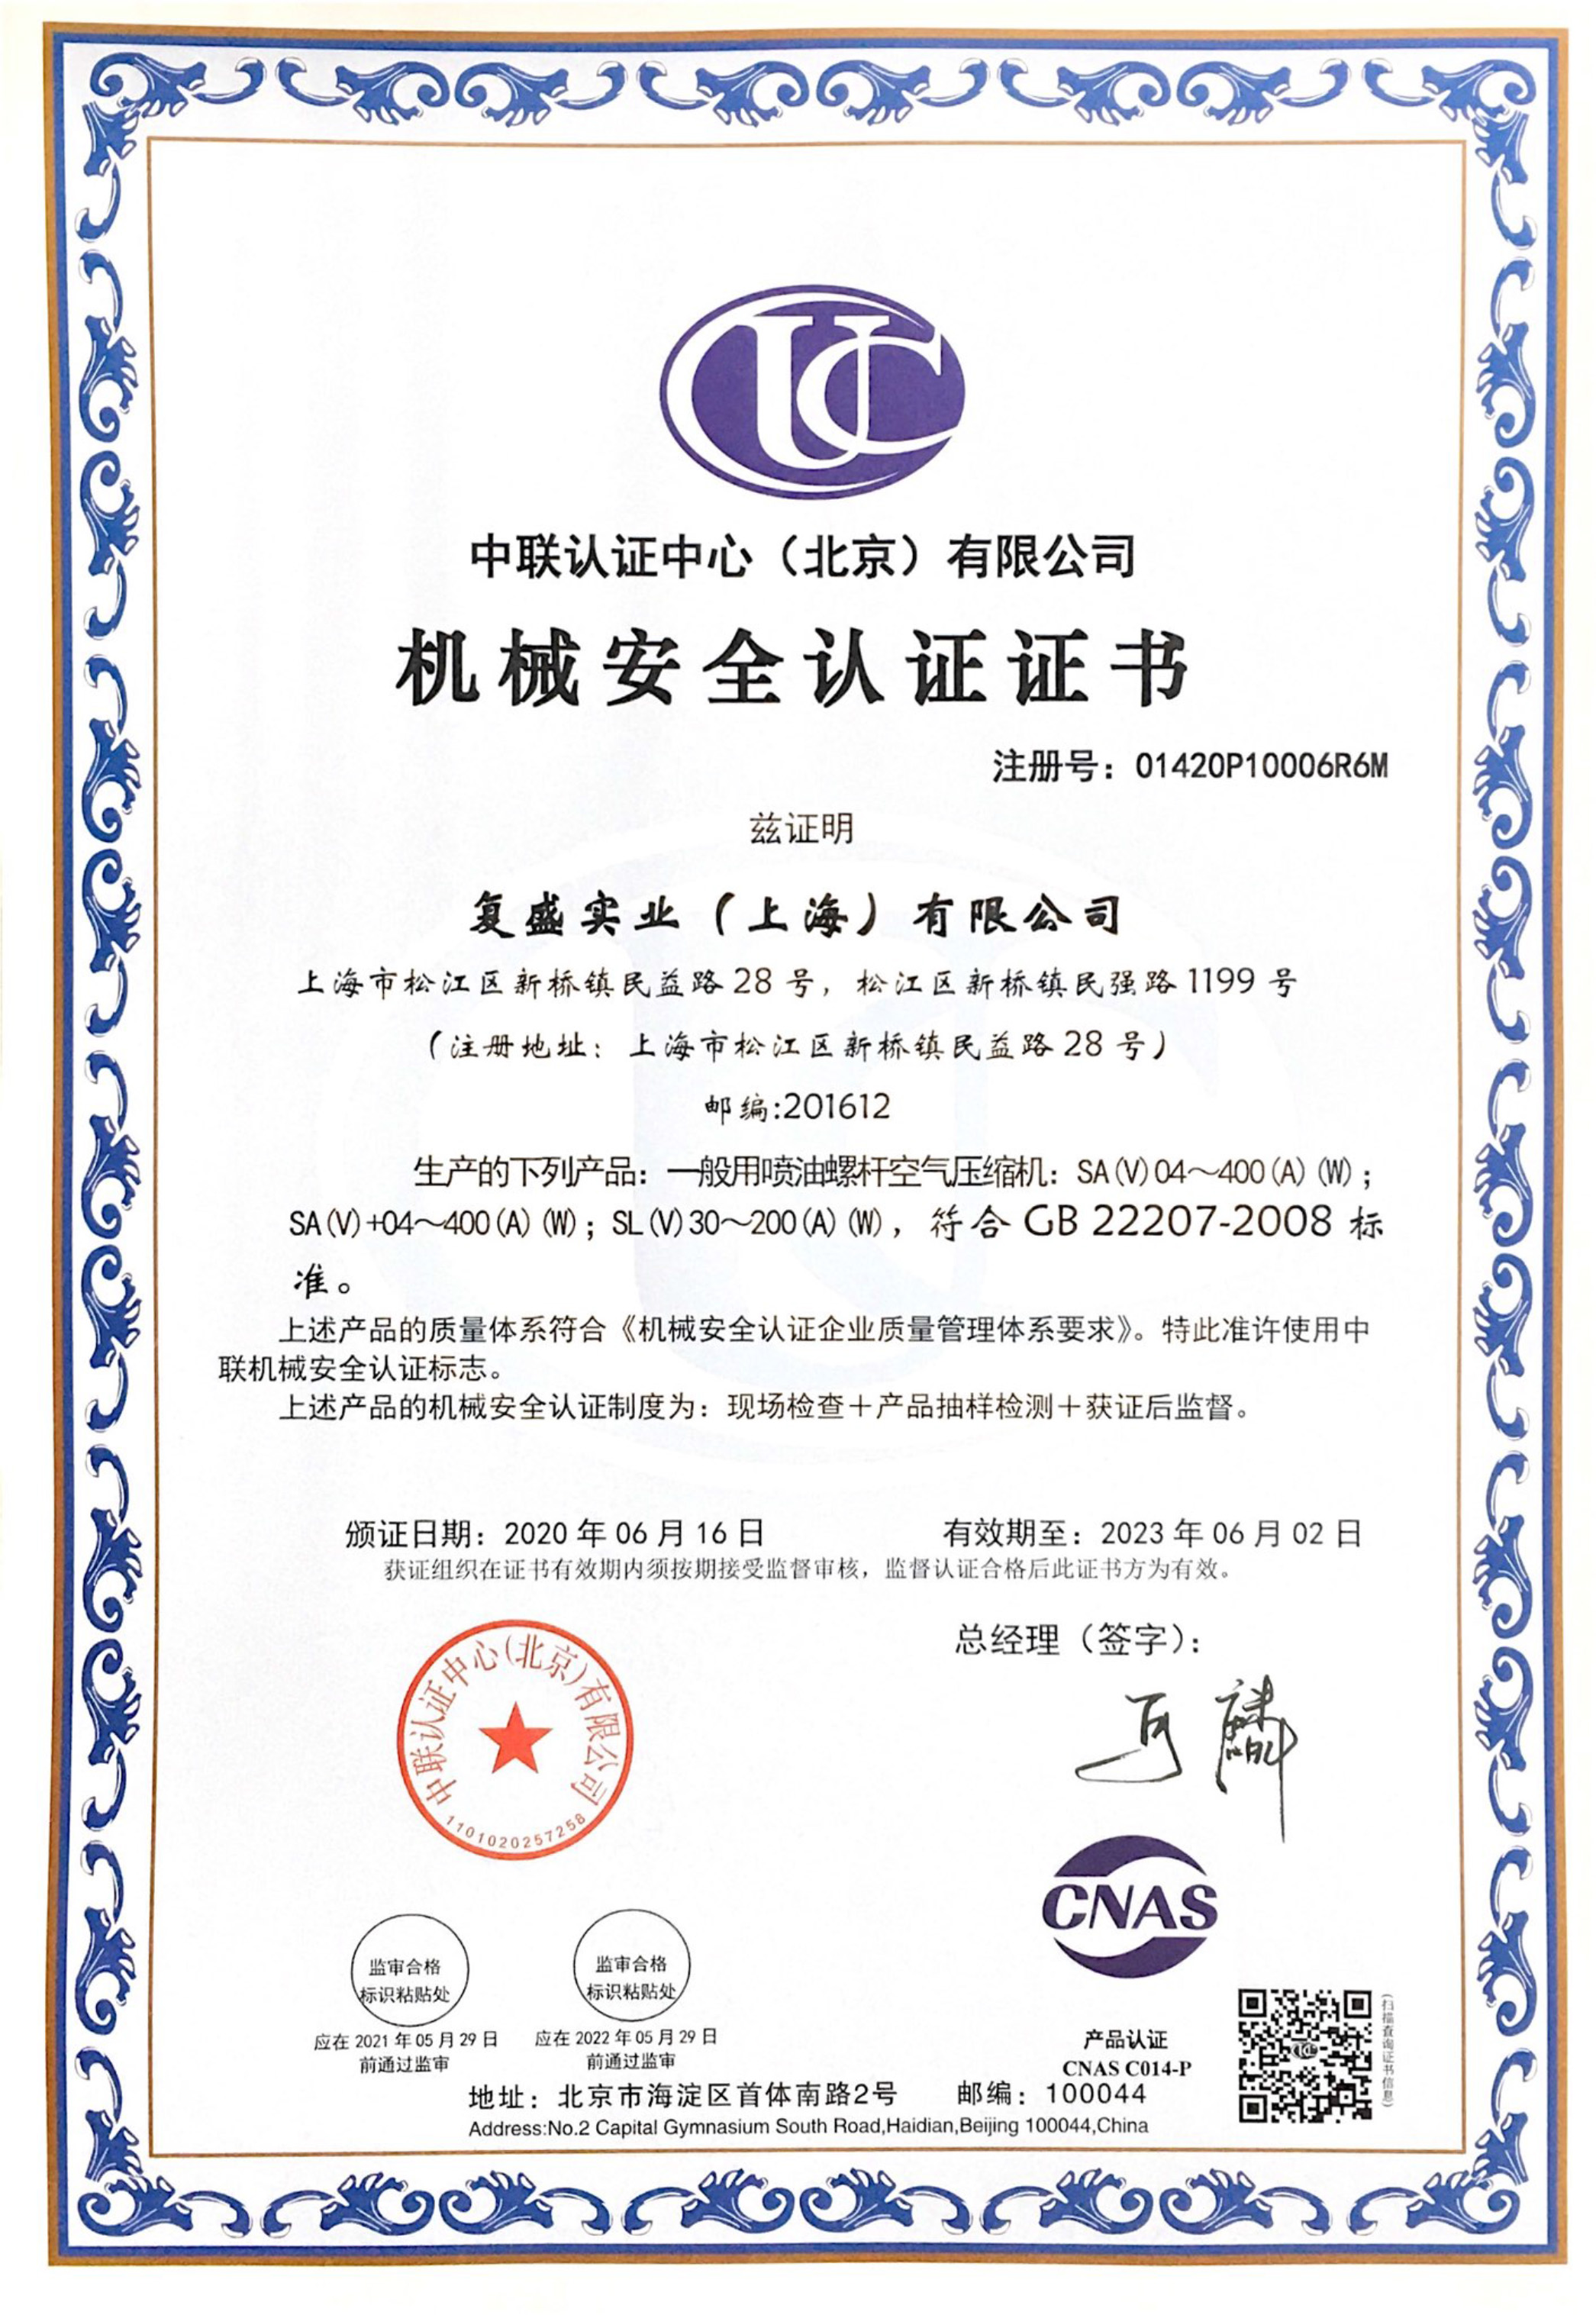 机械安全认证证书-一般用喷油螺杆空气压缩机_中文_202306.jpg